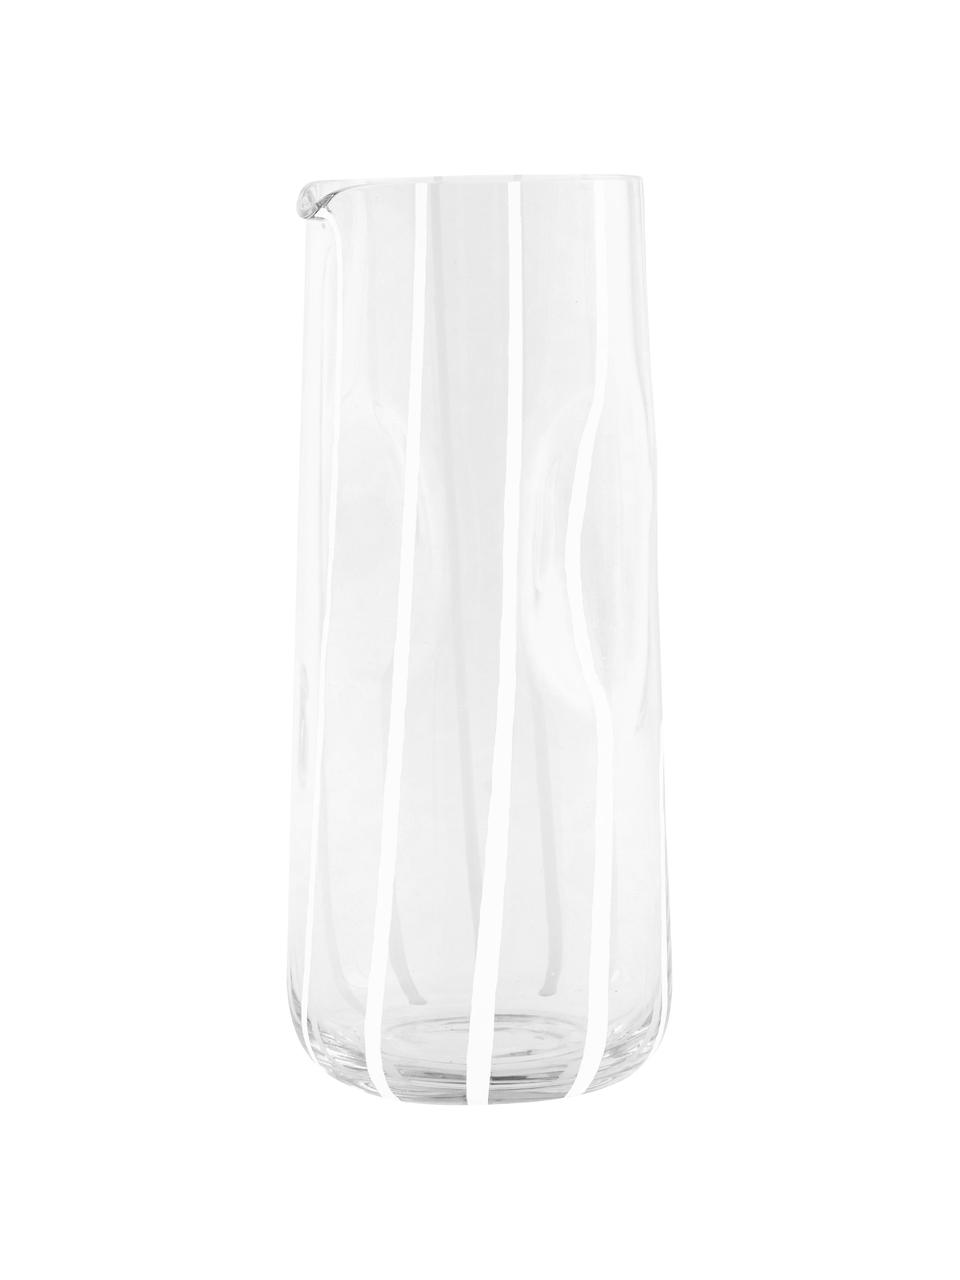 Mondgeblazen waterkaraf Mizu, 1.3 L, Glas, Transparant, 1.3 L